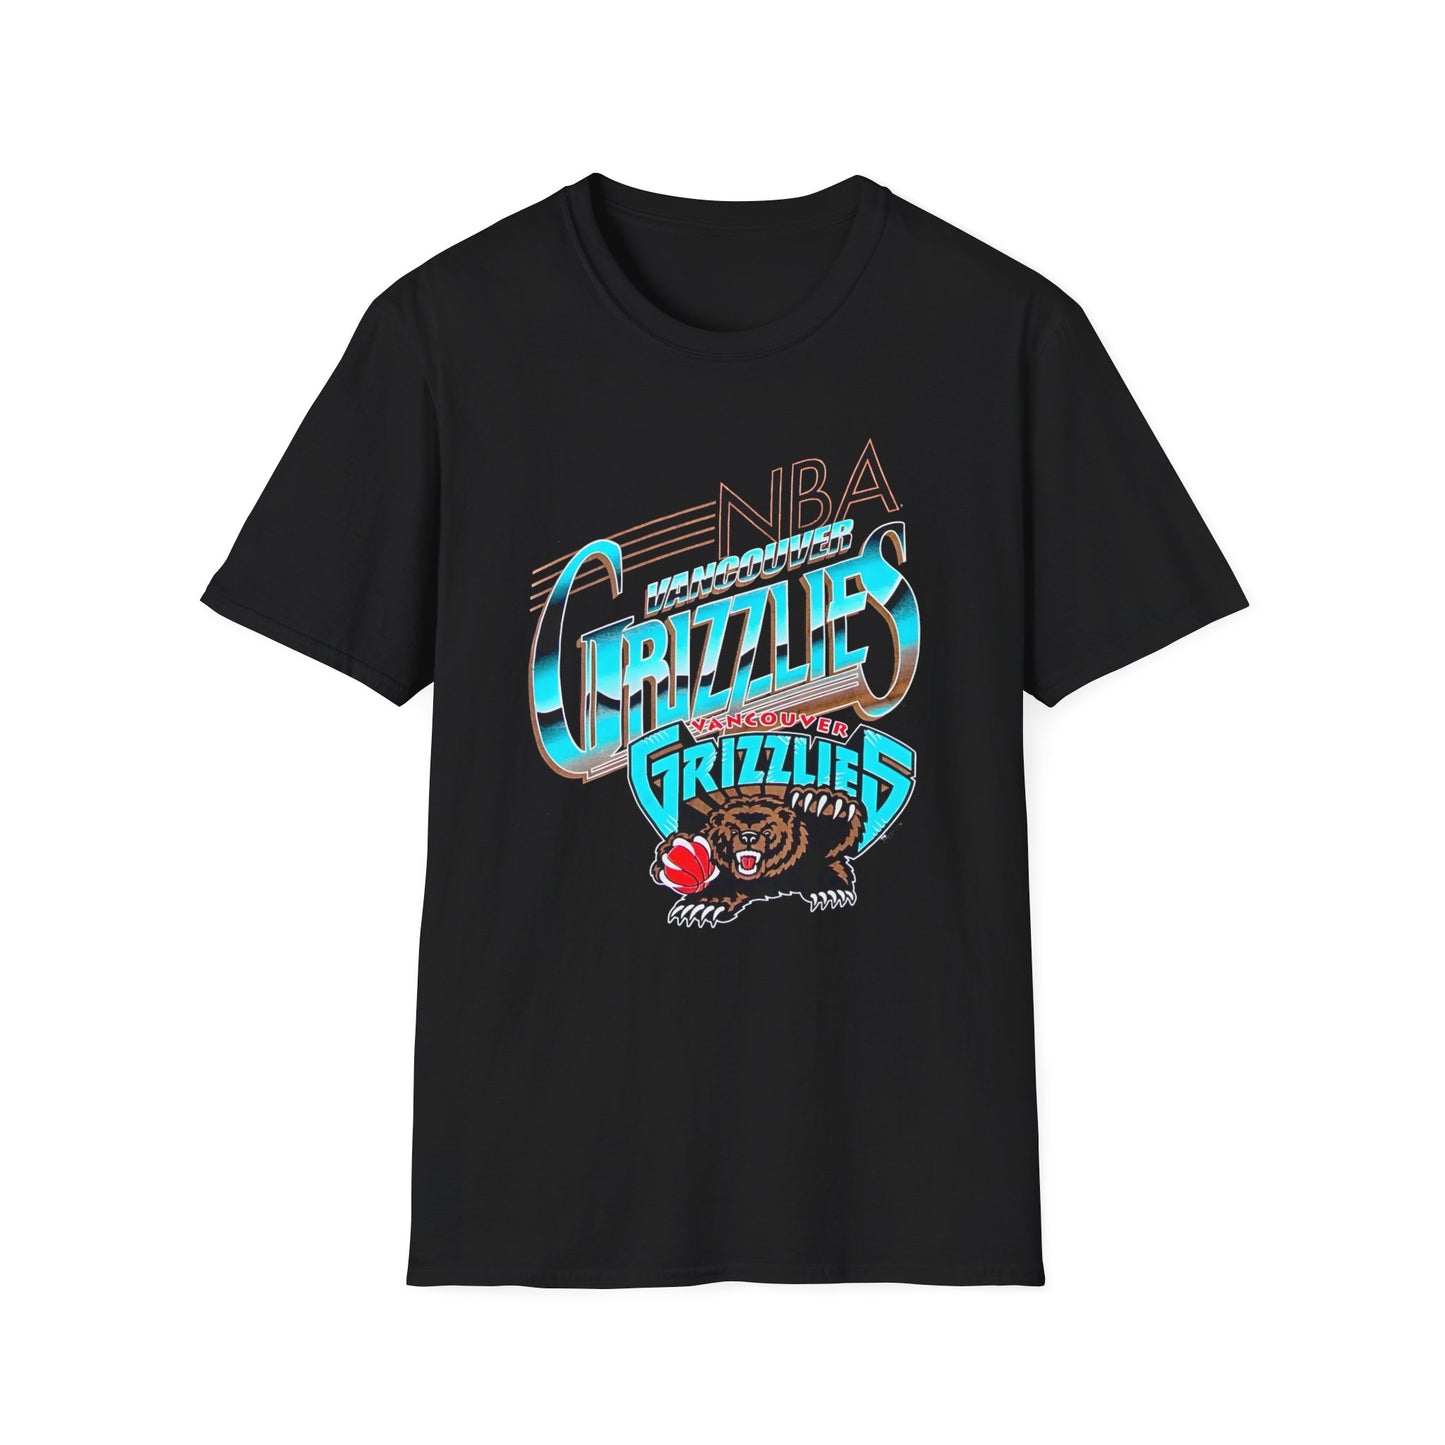 Vintage Vancouver Grizzlies T-Shirt